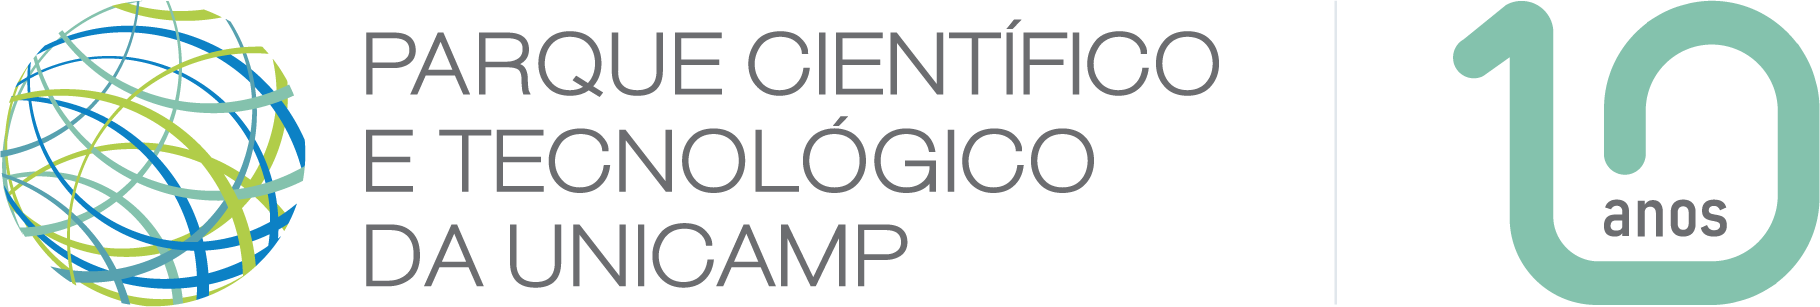 Parque Científico e Tecnológico da Unicamp